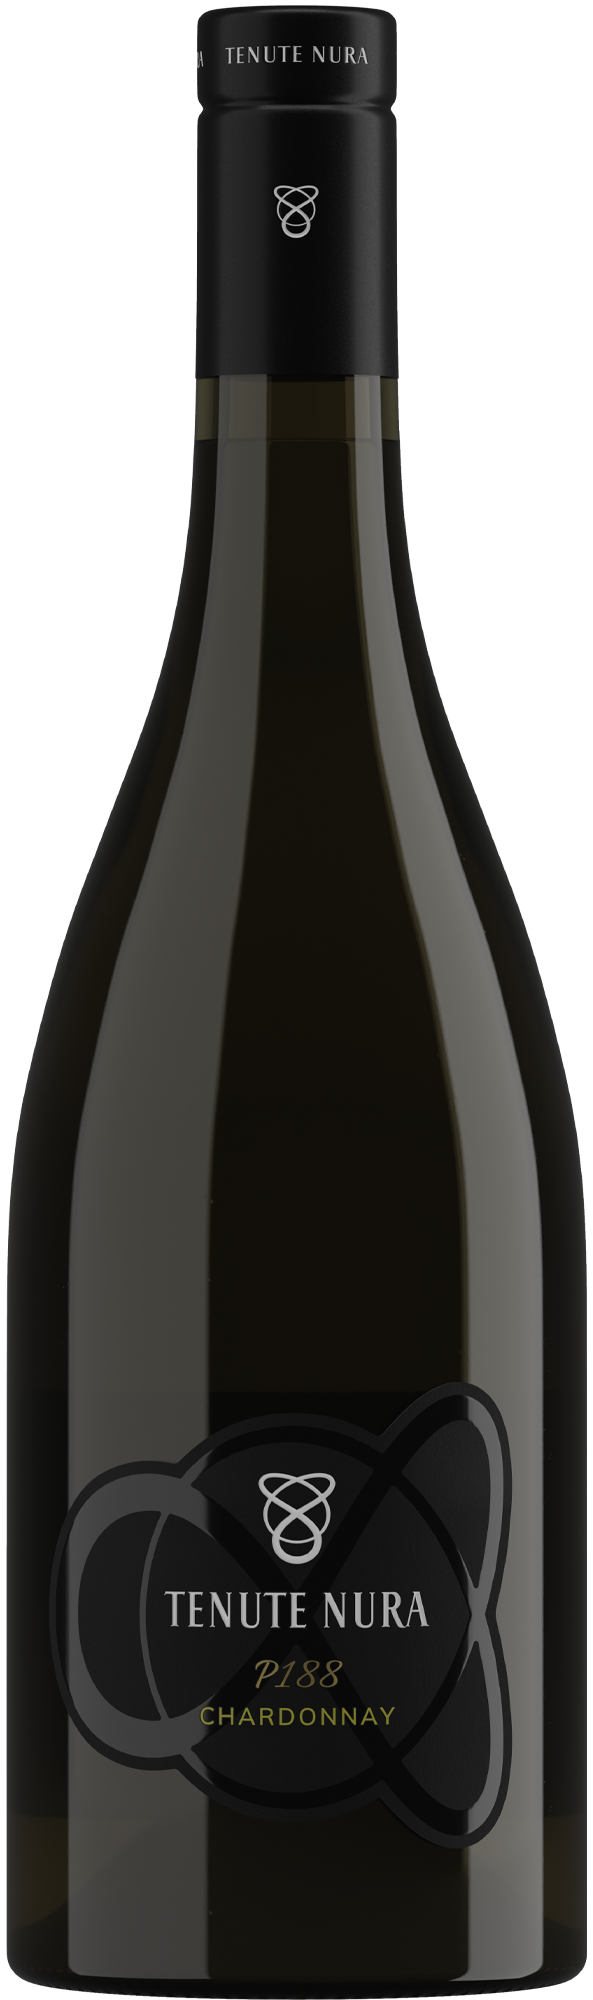 Tenute Nura p188 Chardonnay